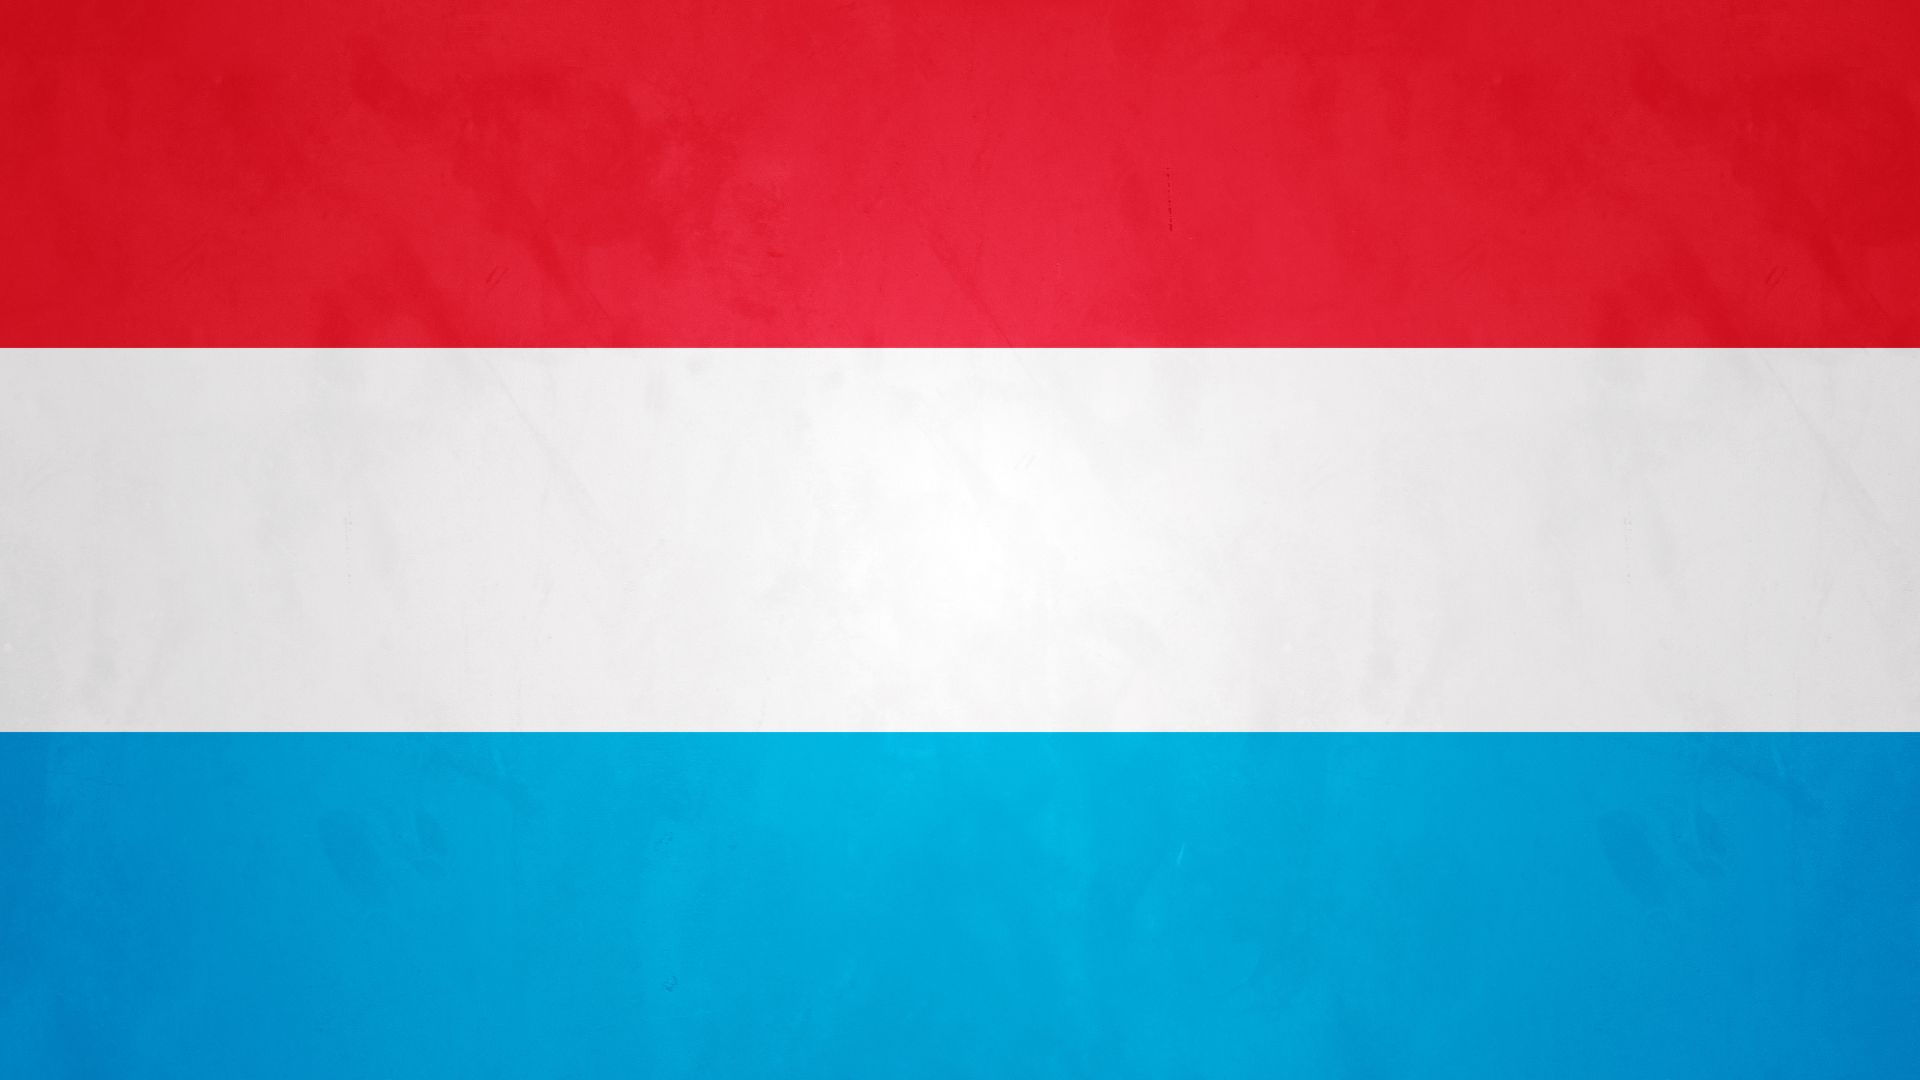 A bandeira do Luxemburgo consiste de três barras horizontais iguais de vermelho, branco e azul claro.